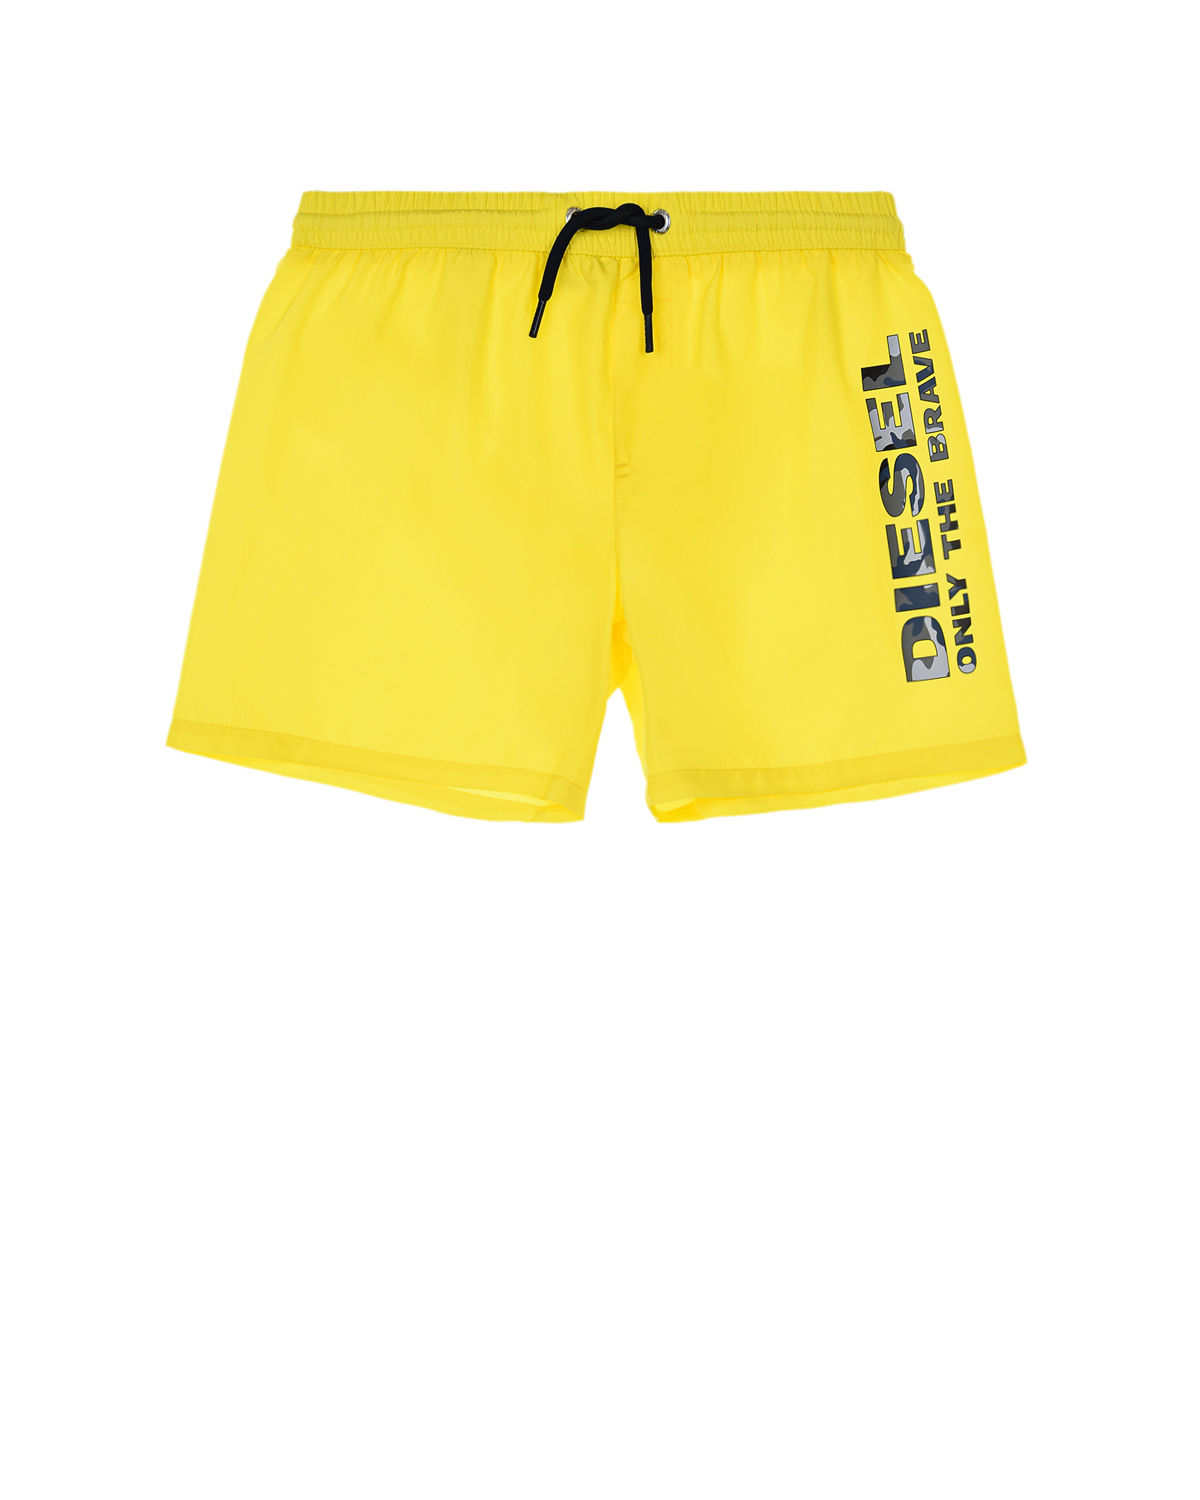 Желтые шорты для купания Diesel детские, размер 128, цвет желтый - фото 1